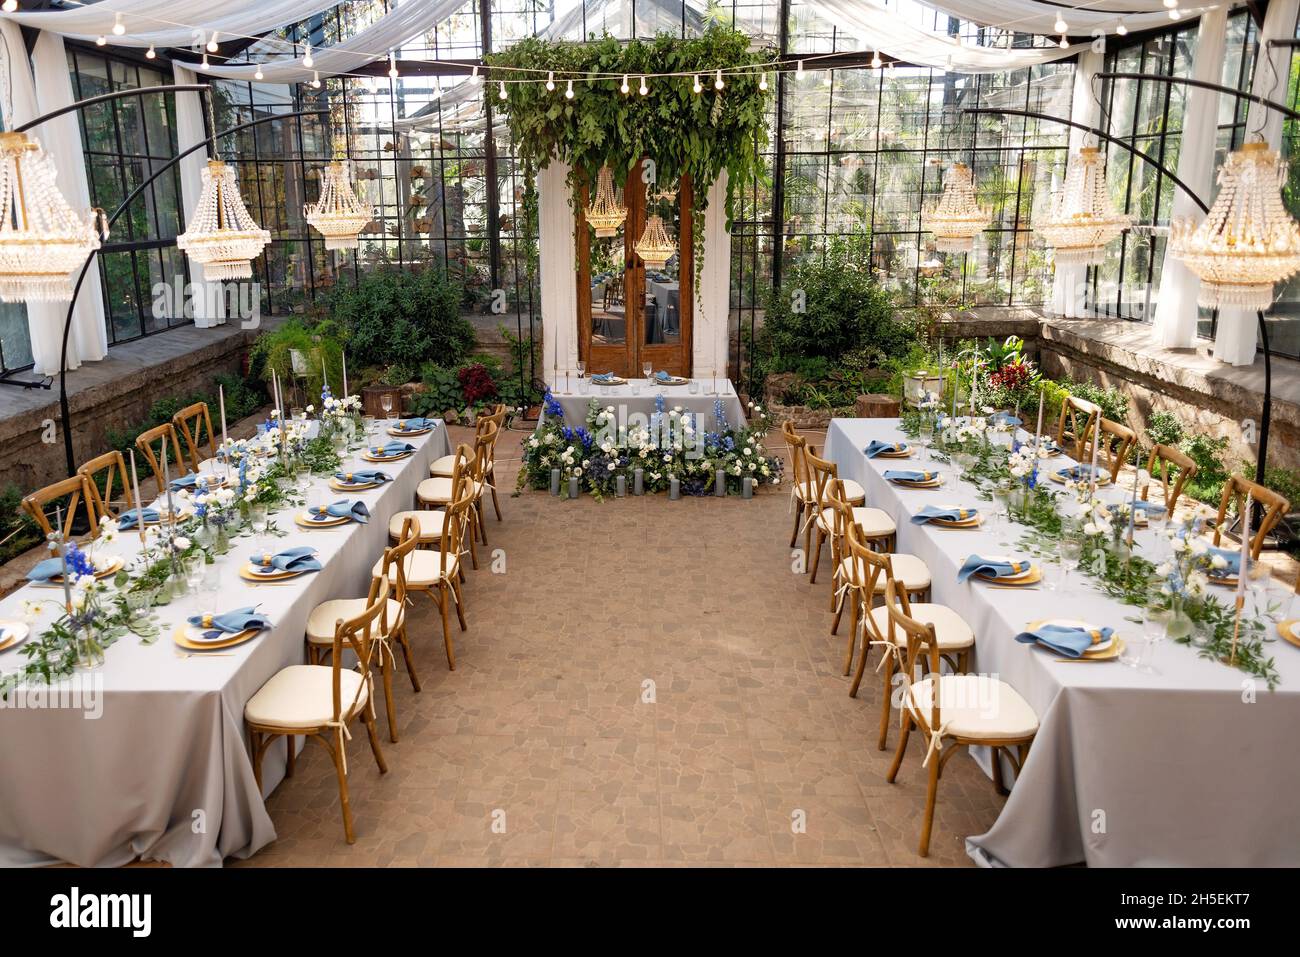 Salle de banquet de mariage dans la serre, les tables sont disposées,  décorées avec des fleurs fraîches, des bougies, des lustres en cristal.Mise  au point sélective douce Photo Stock - Alamy